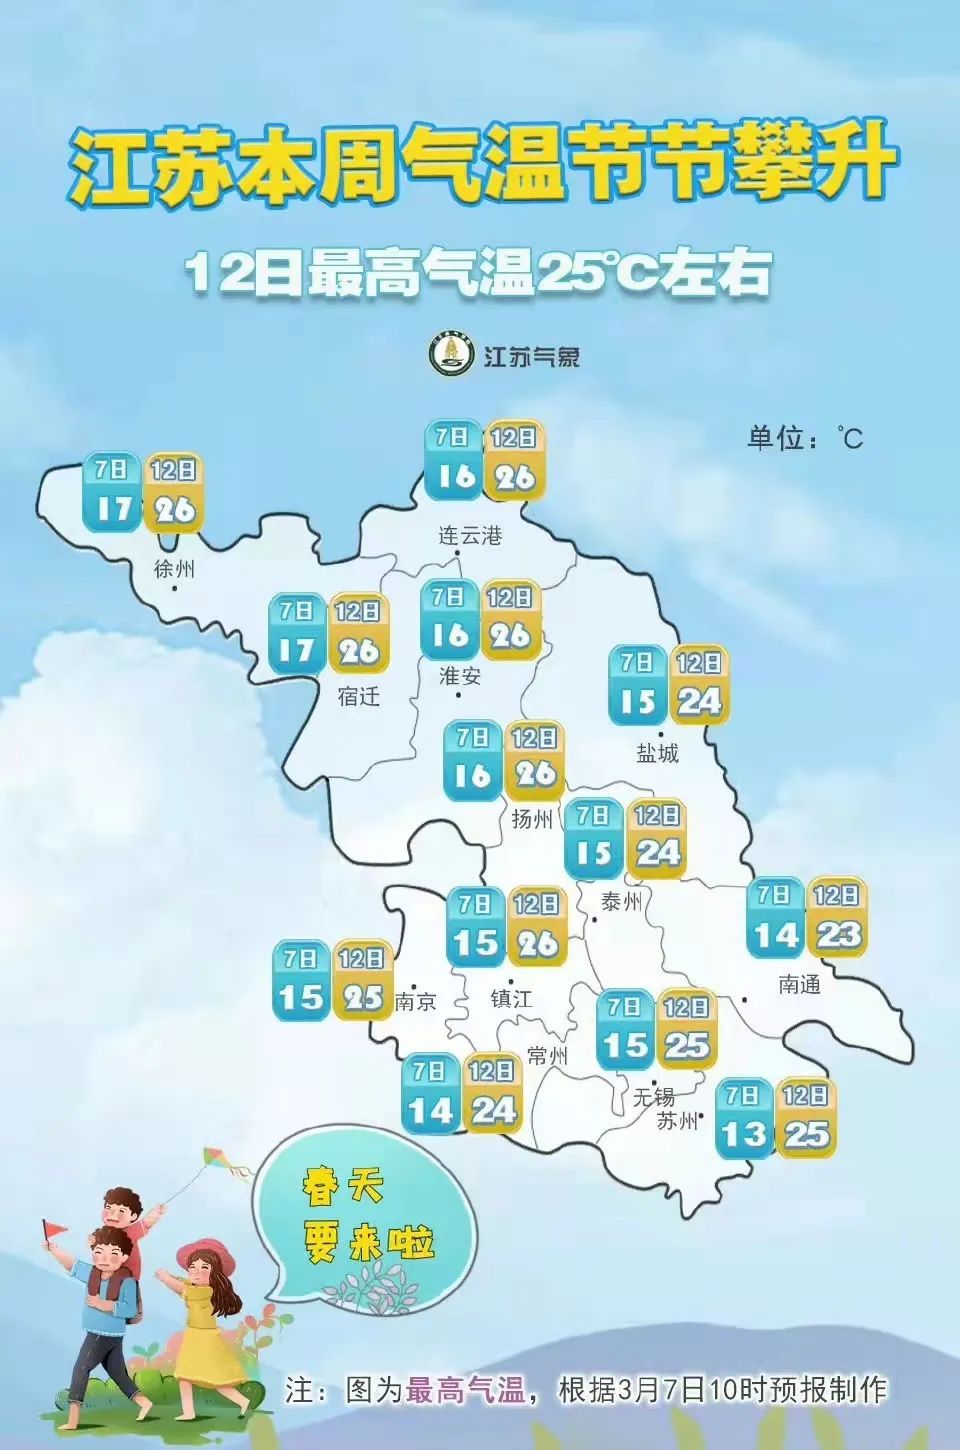 邳州天气想要绕开春天吗?26℃让人难以置信